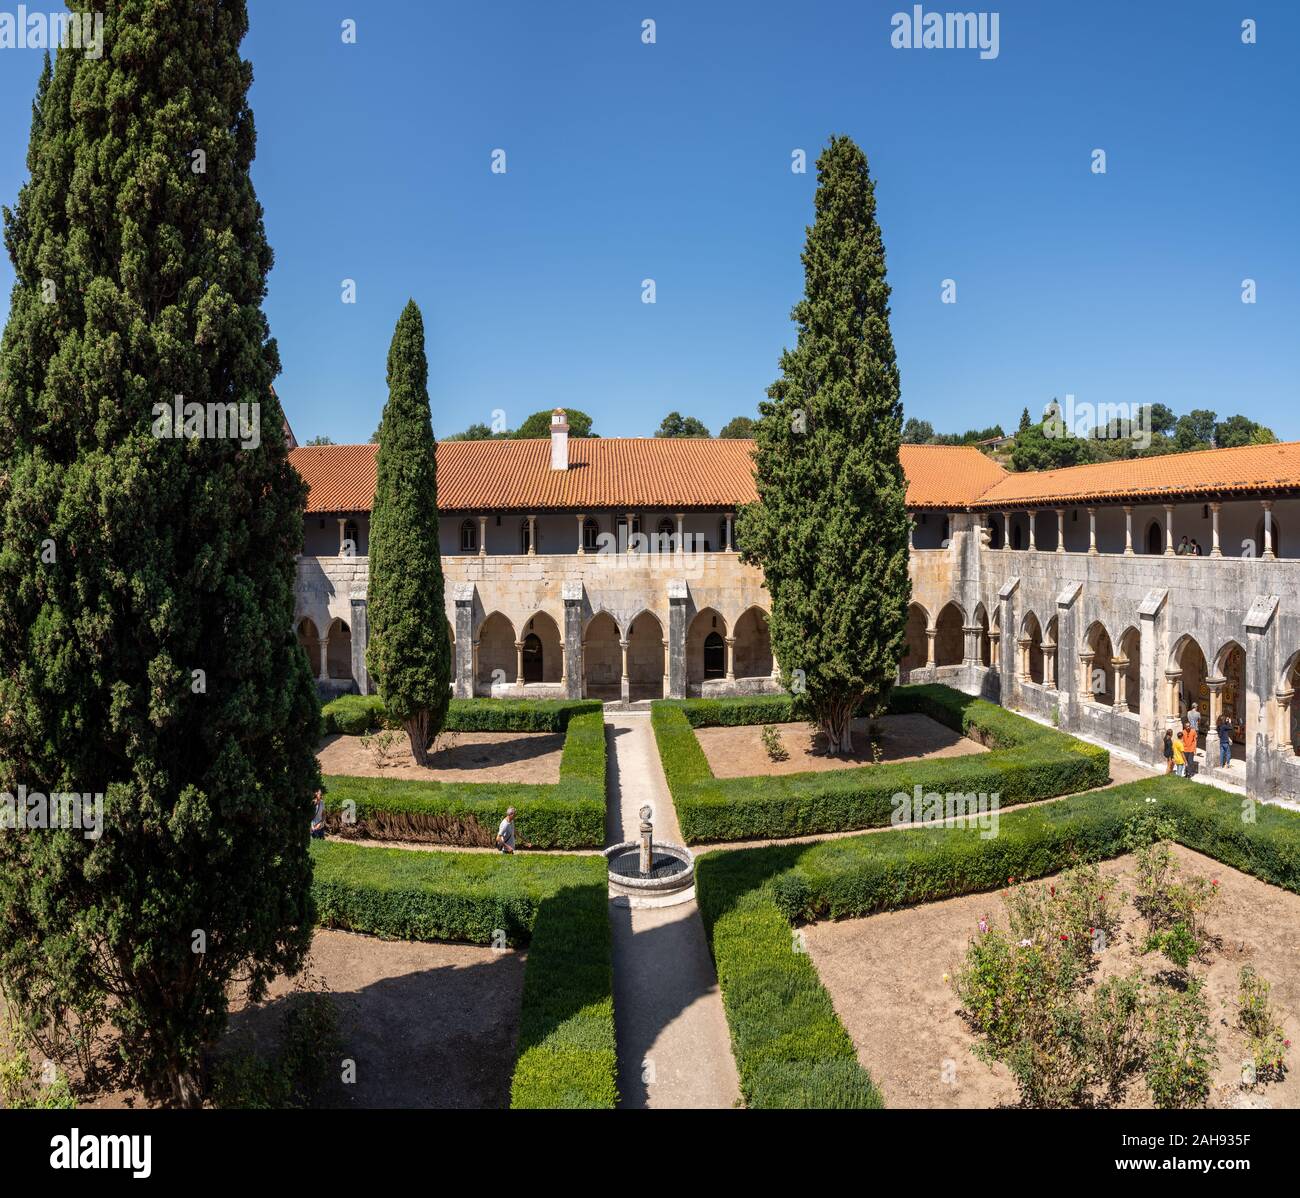 Leiria, Portugal - 20 août 2019 : arches étroites autour du cloître au Monastère de Batalha, près de Leiria au Portugal Banque D'Images